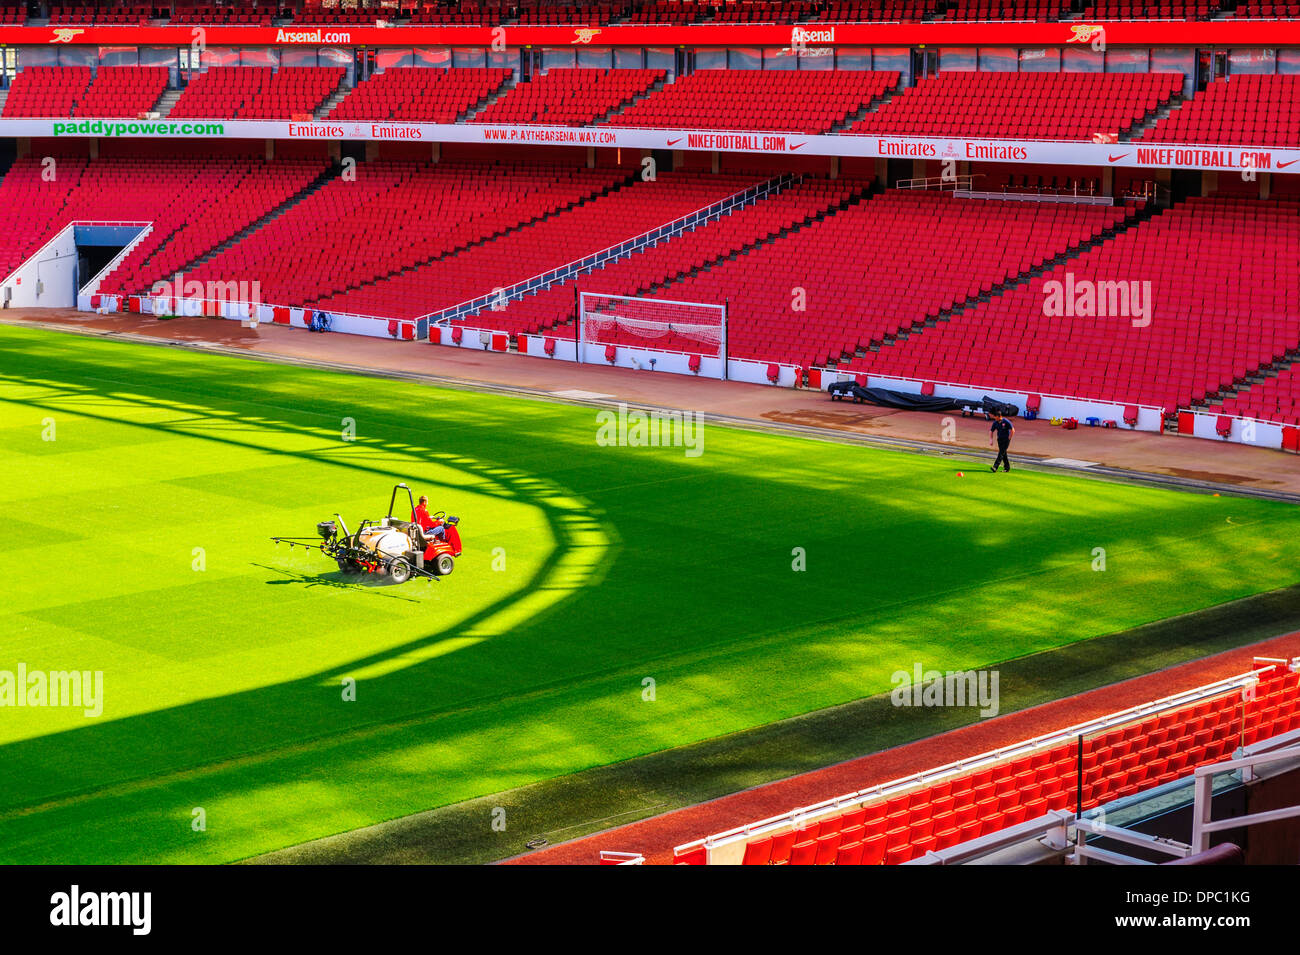 Il tono è di essere abbeverati e hanno partecipato all'Emirates Stadium - casa dell'Arsenal Football Club a Londra, Inghilterra Foto Stock